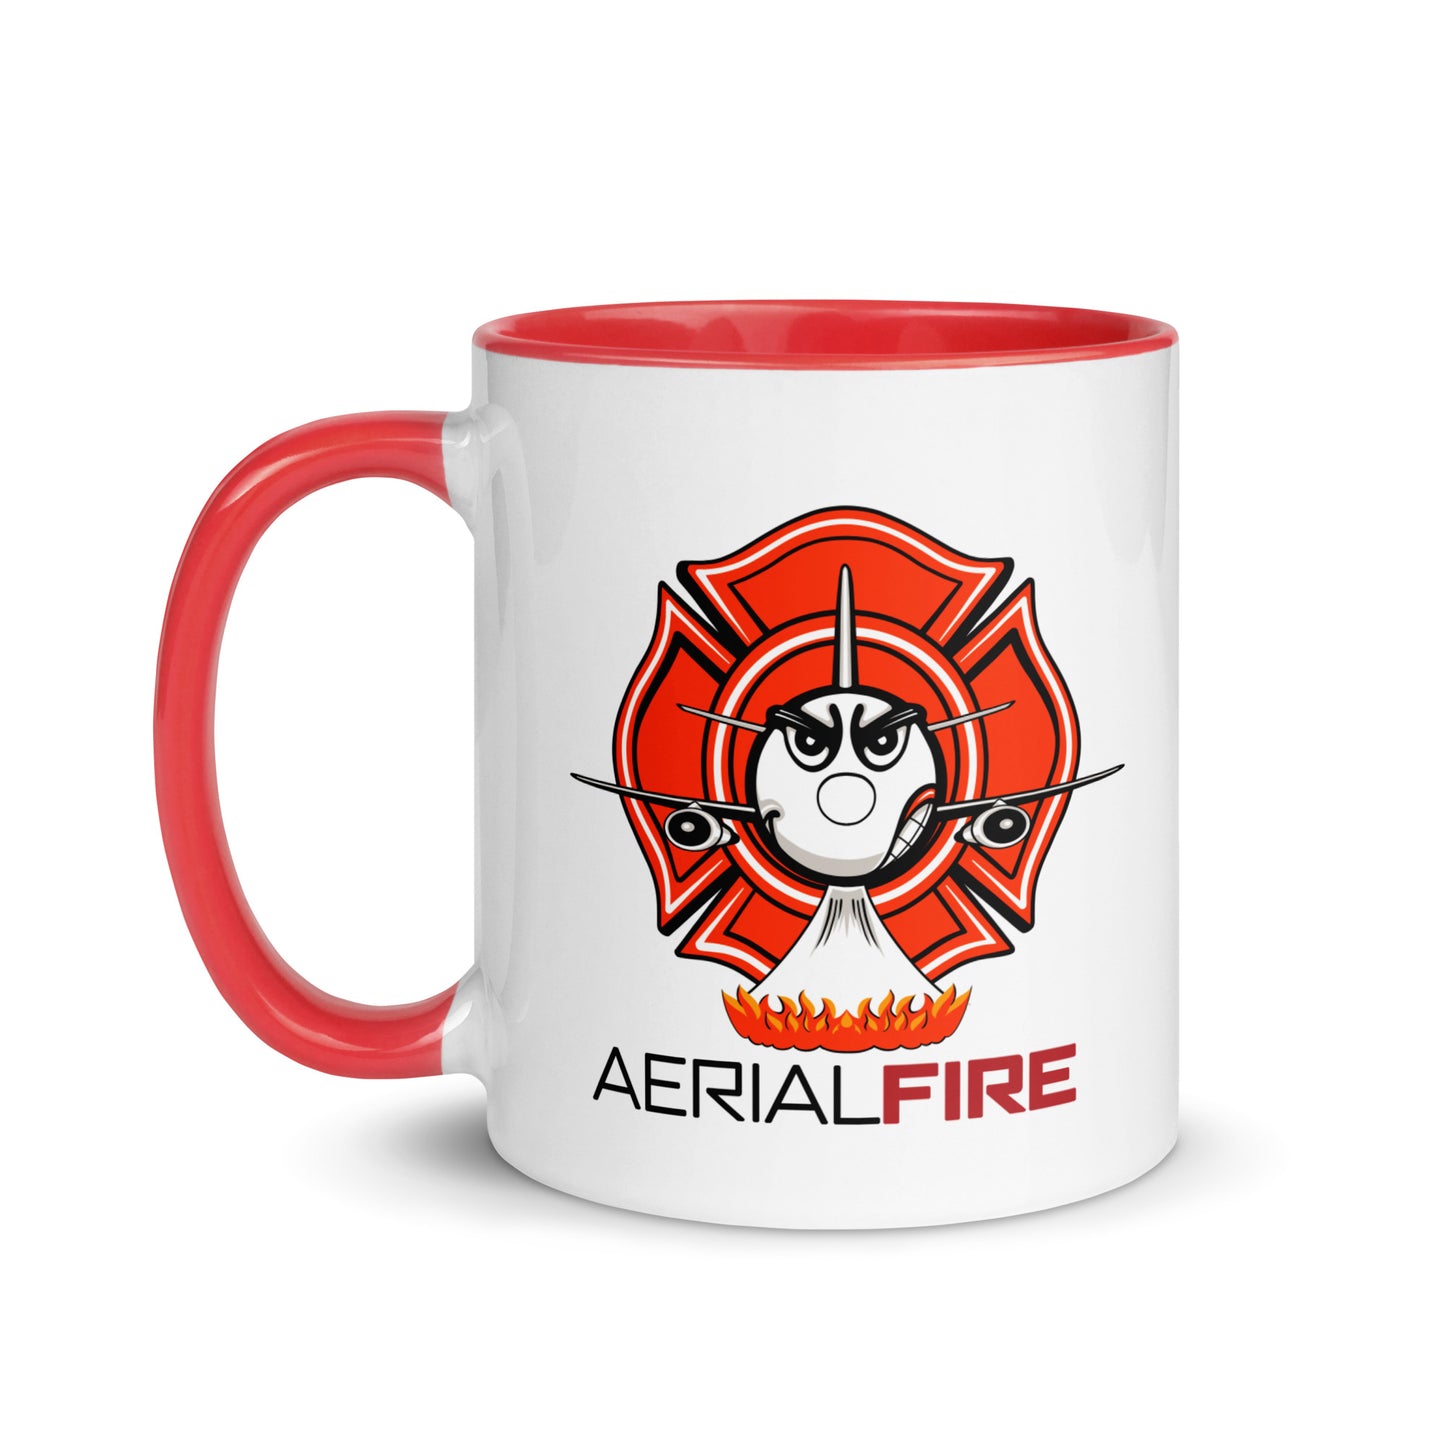 AerialFire 737 Cartoon Mug with Color Inside